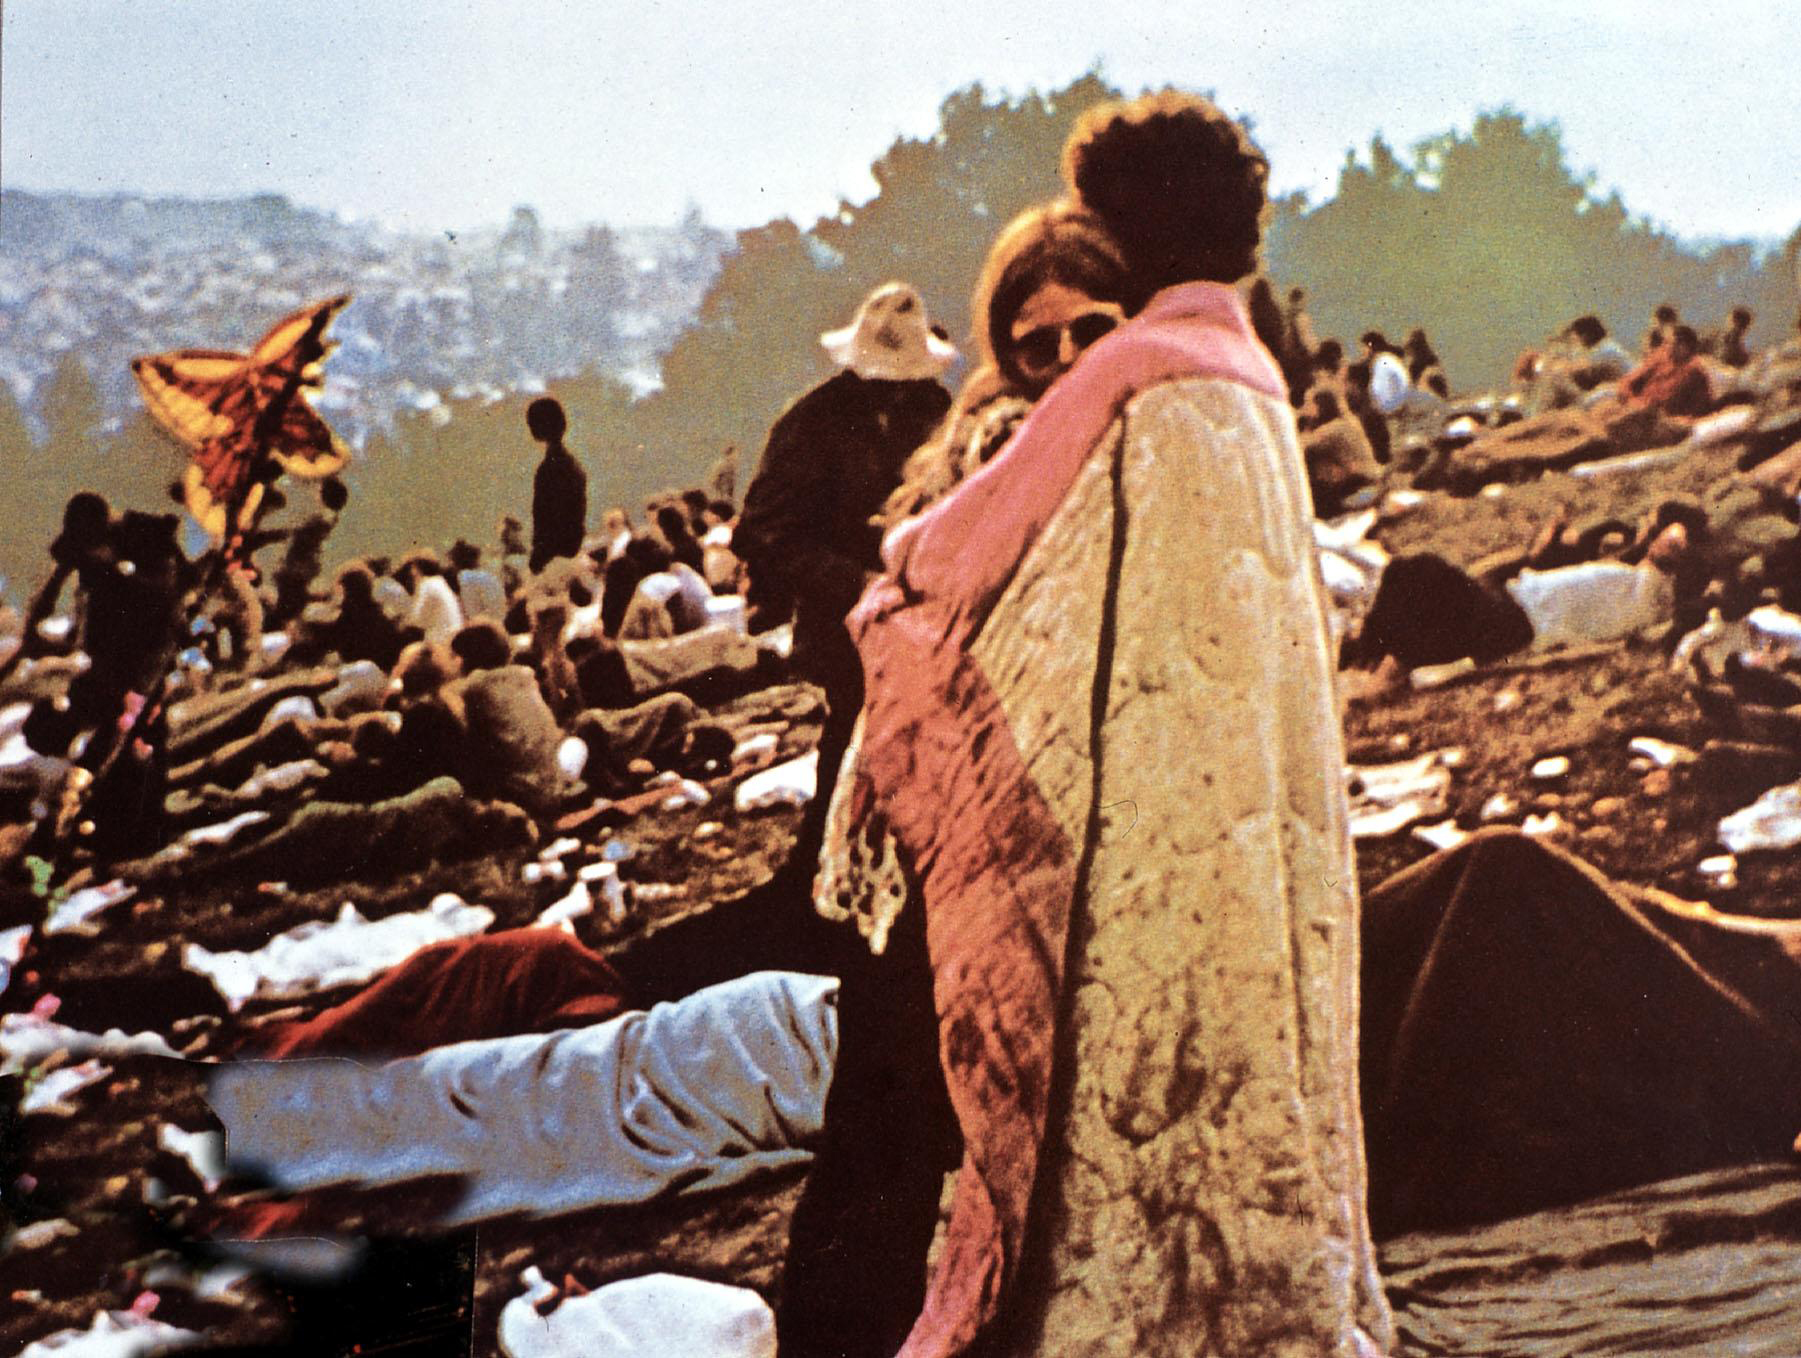 Στιγμιότυπο από το φεστιβάλ του Woodstock το 1969